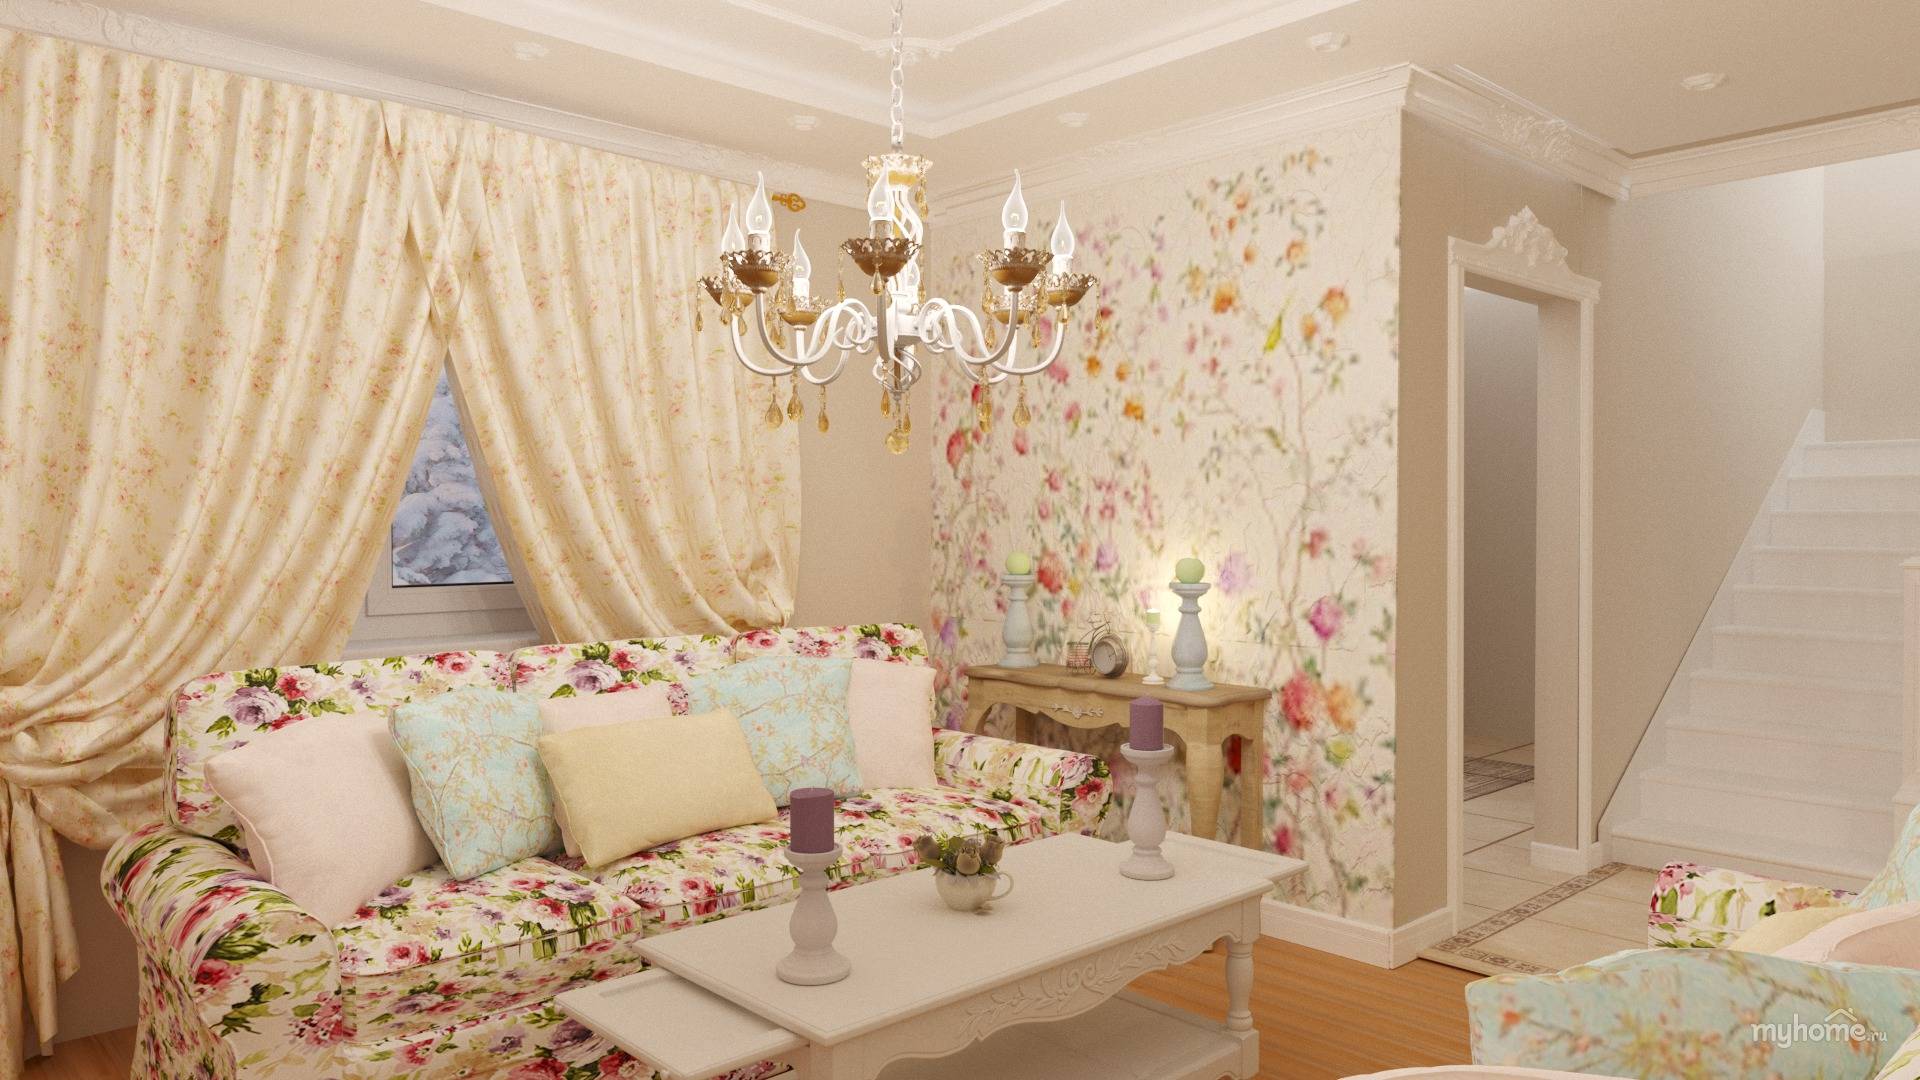 Обои в стиле прованс: особенности стиля и его происхождение, нюансы оформления спальни и других комнат